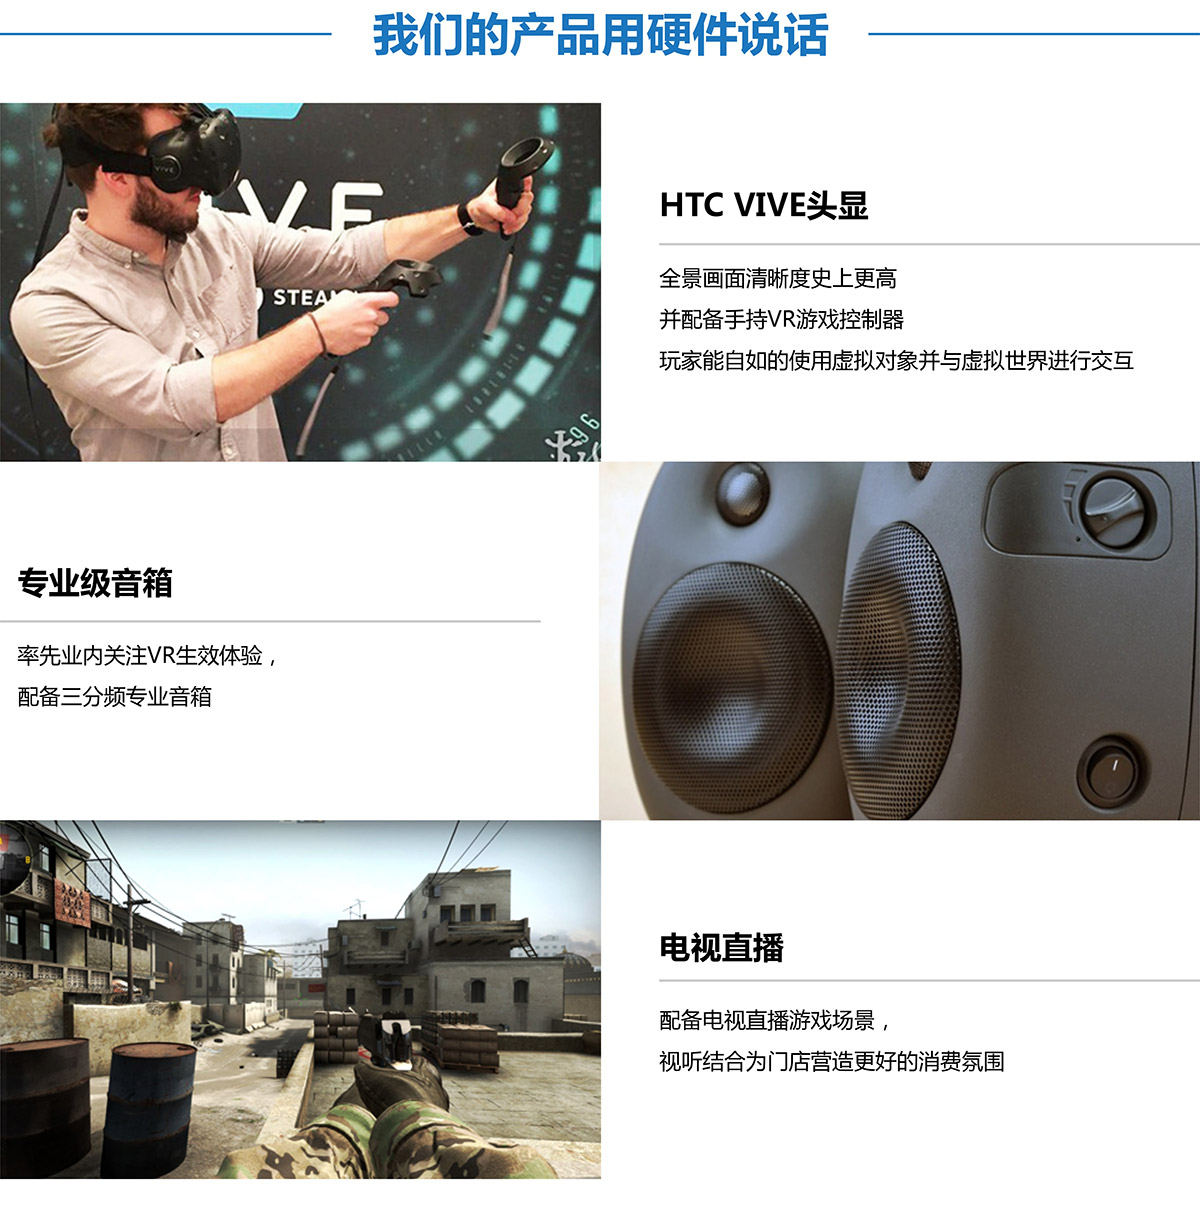 特效电影VR探索用硬件说话.jpg